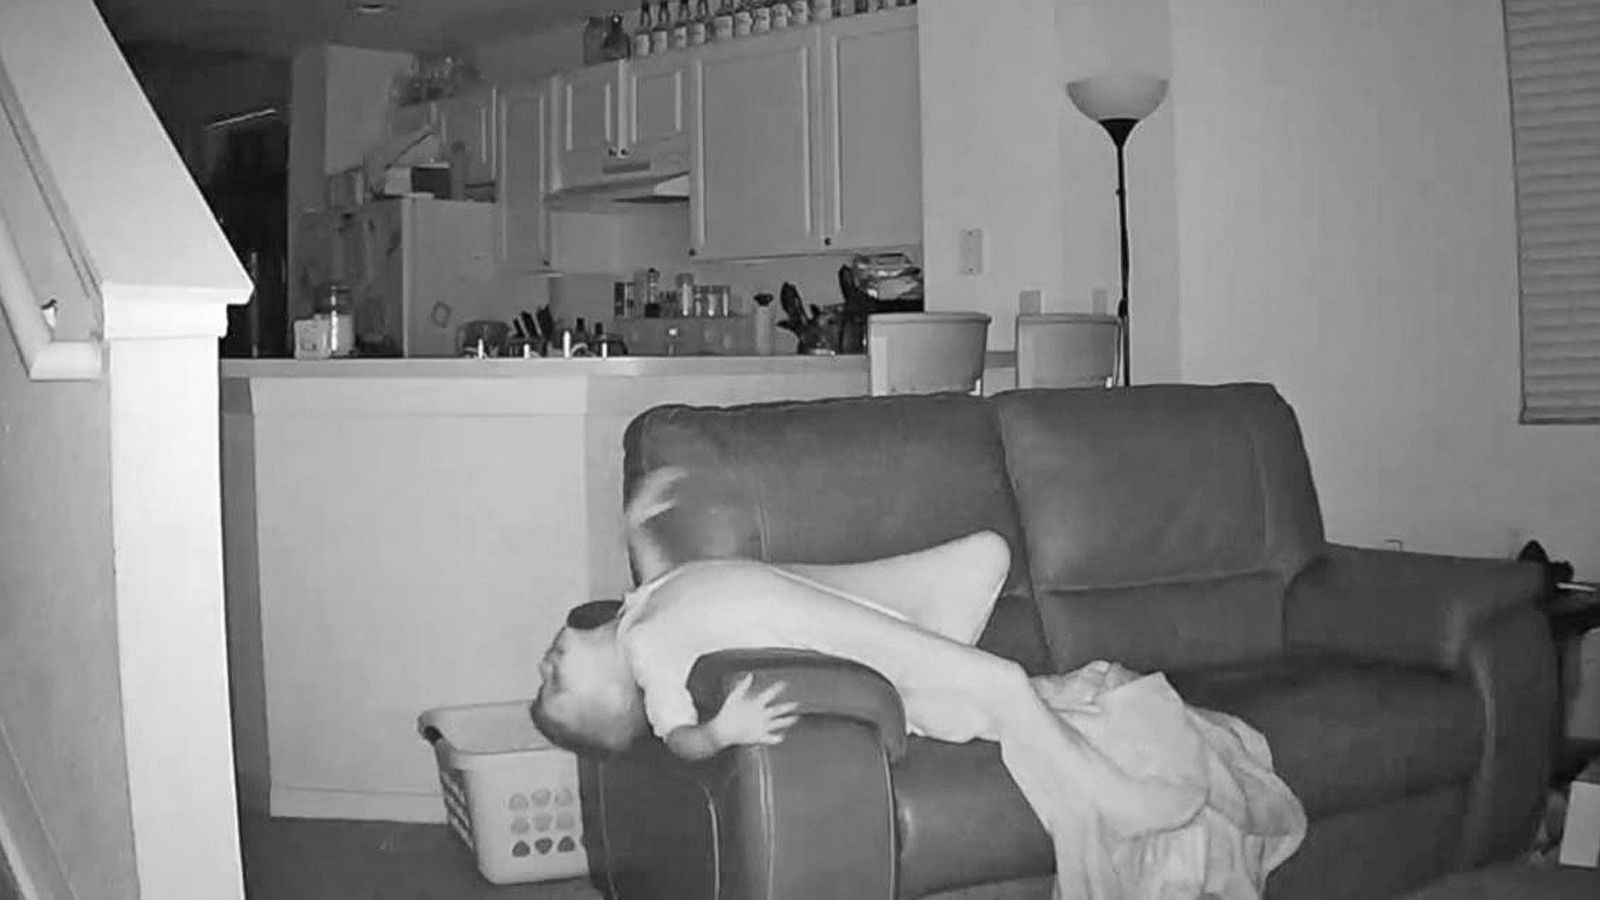 Home Surveillance Video Captures Boys